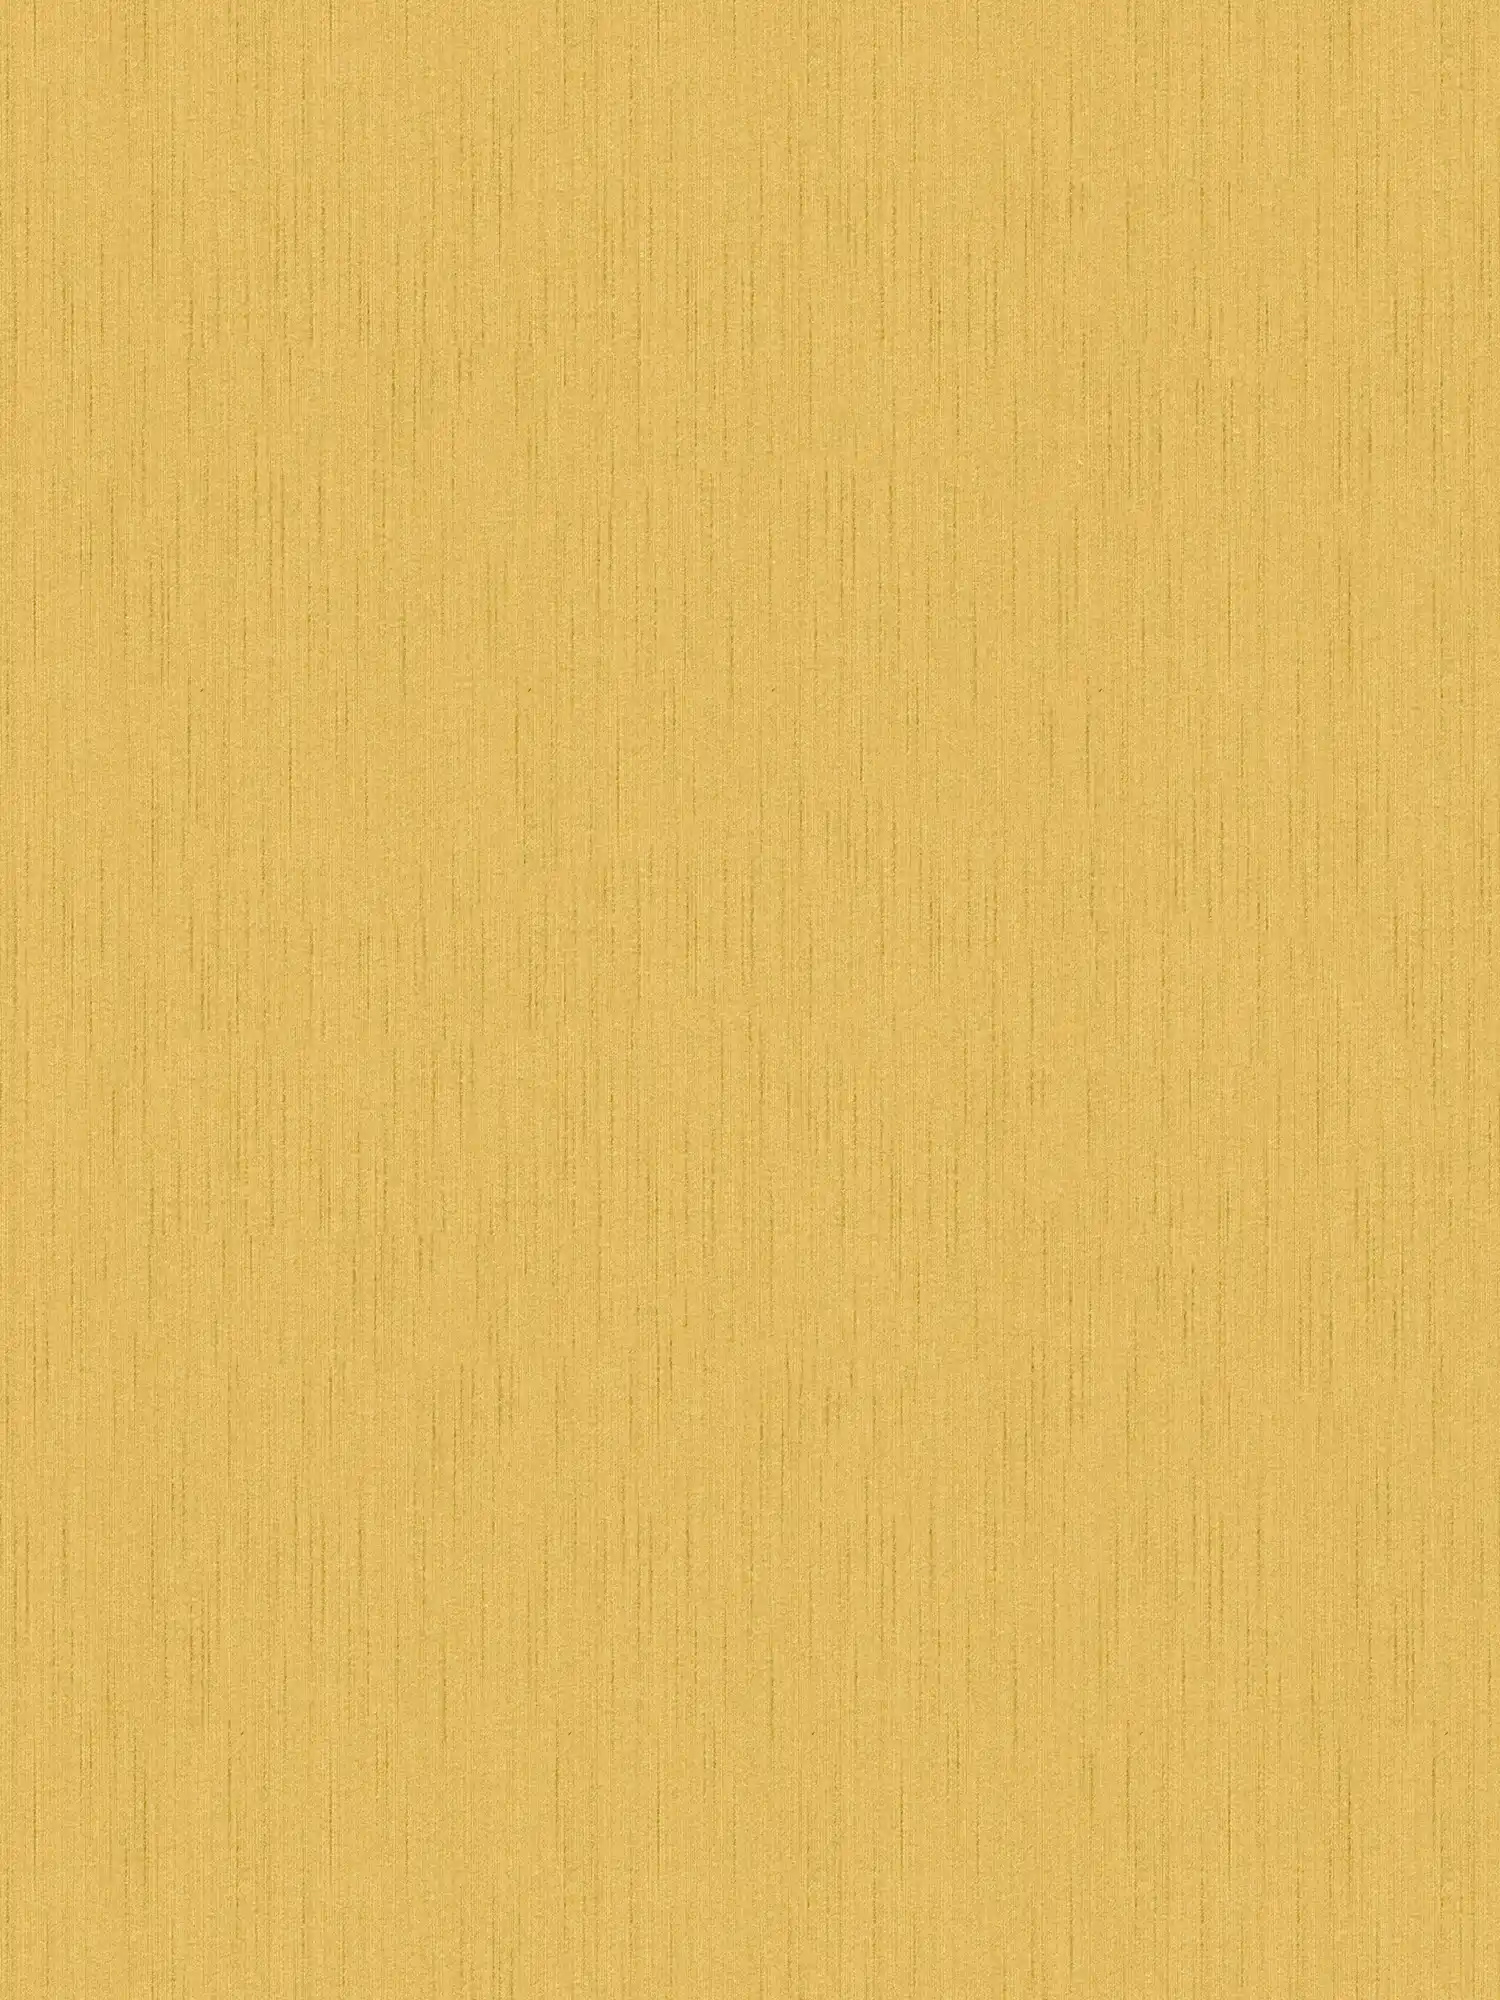 Papier peint jaune moutarde intissé avec motif chiné - jaune
